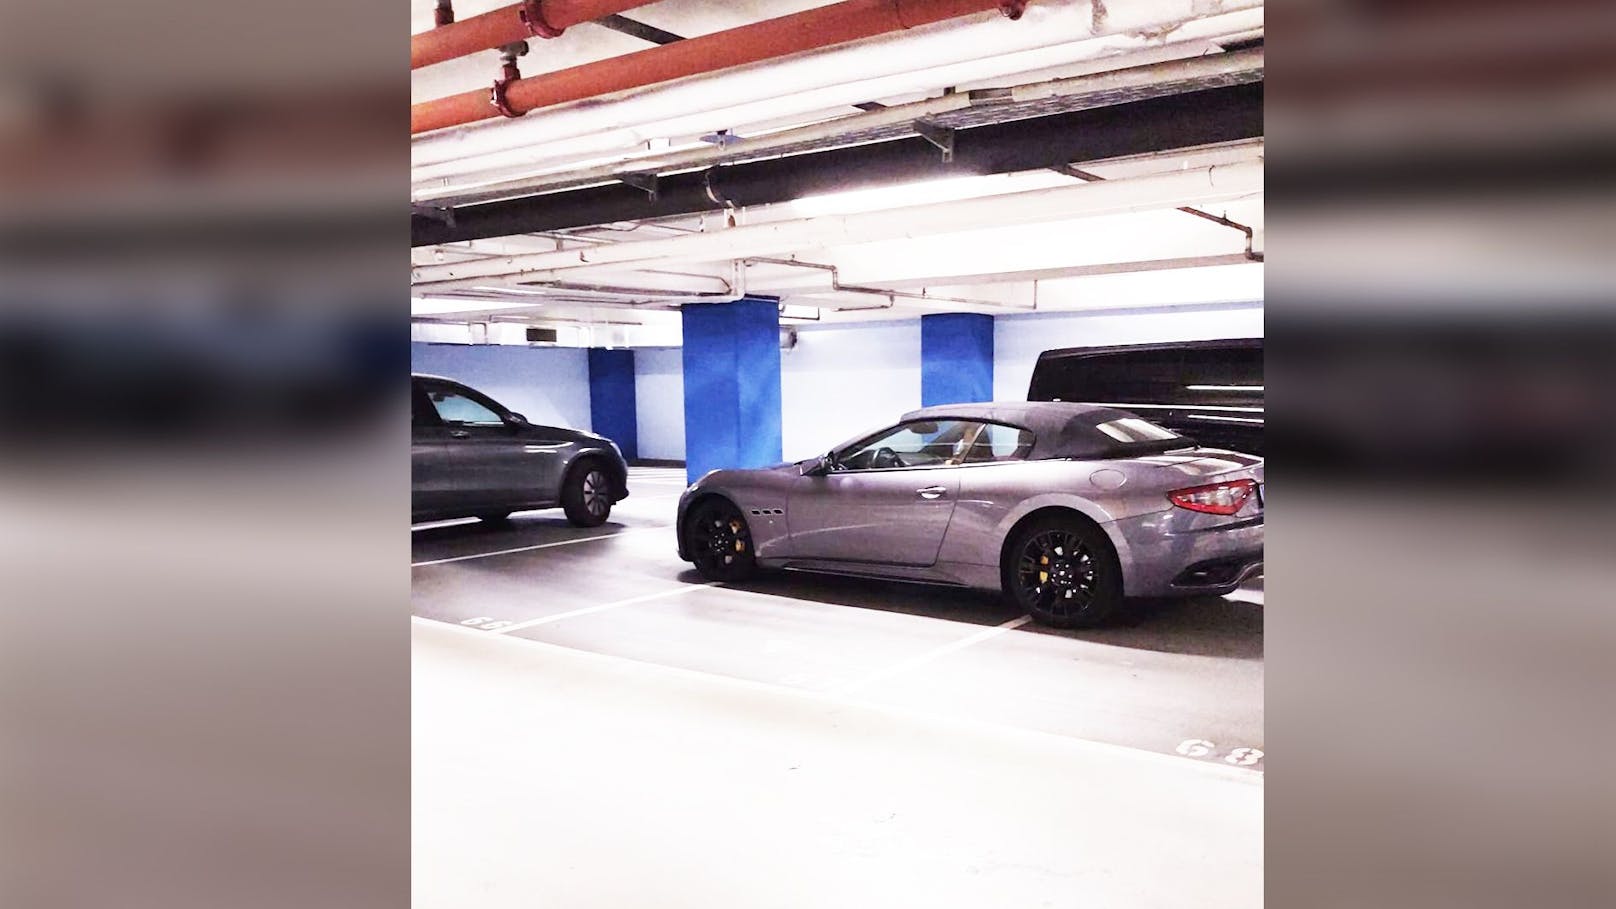 Dreist: Maserati-Cabrio besetzt 3 Parkplätze auf einmal